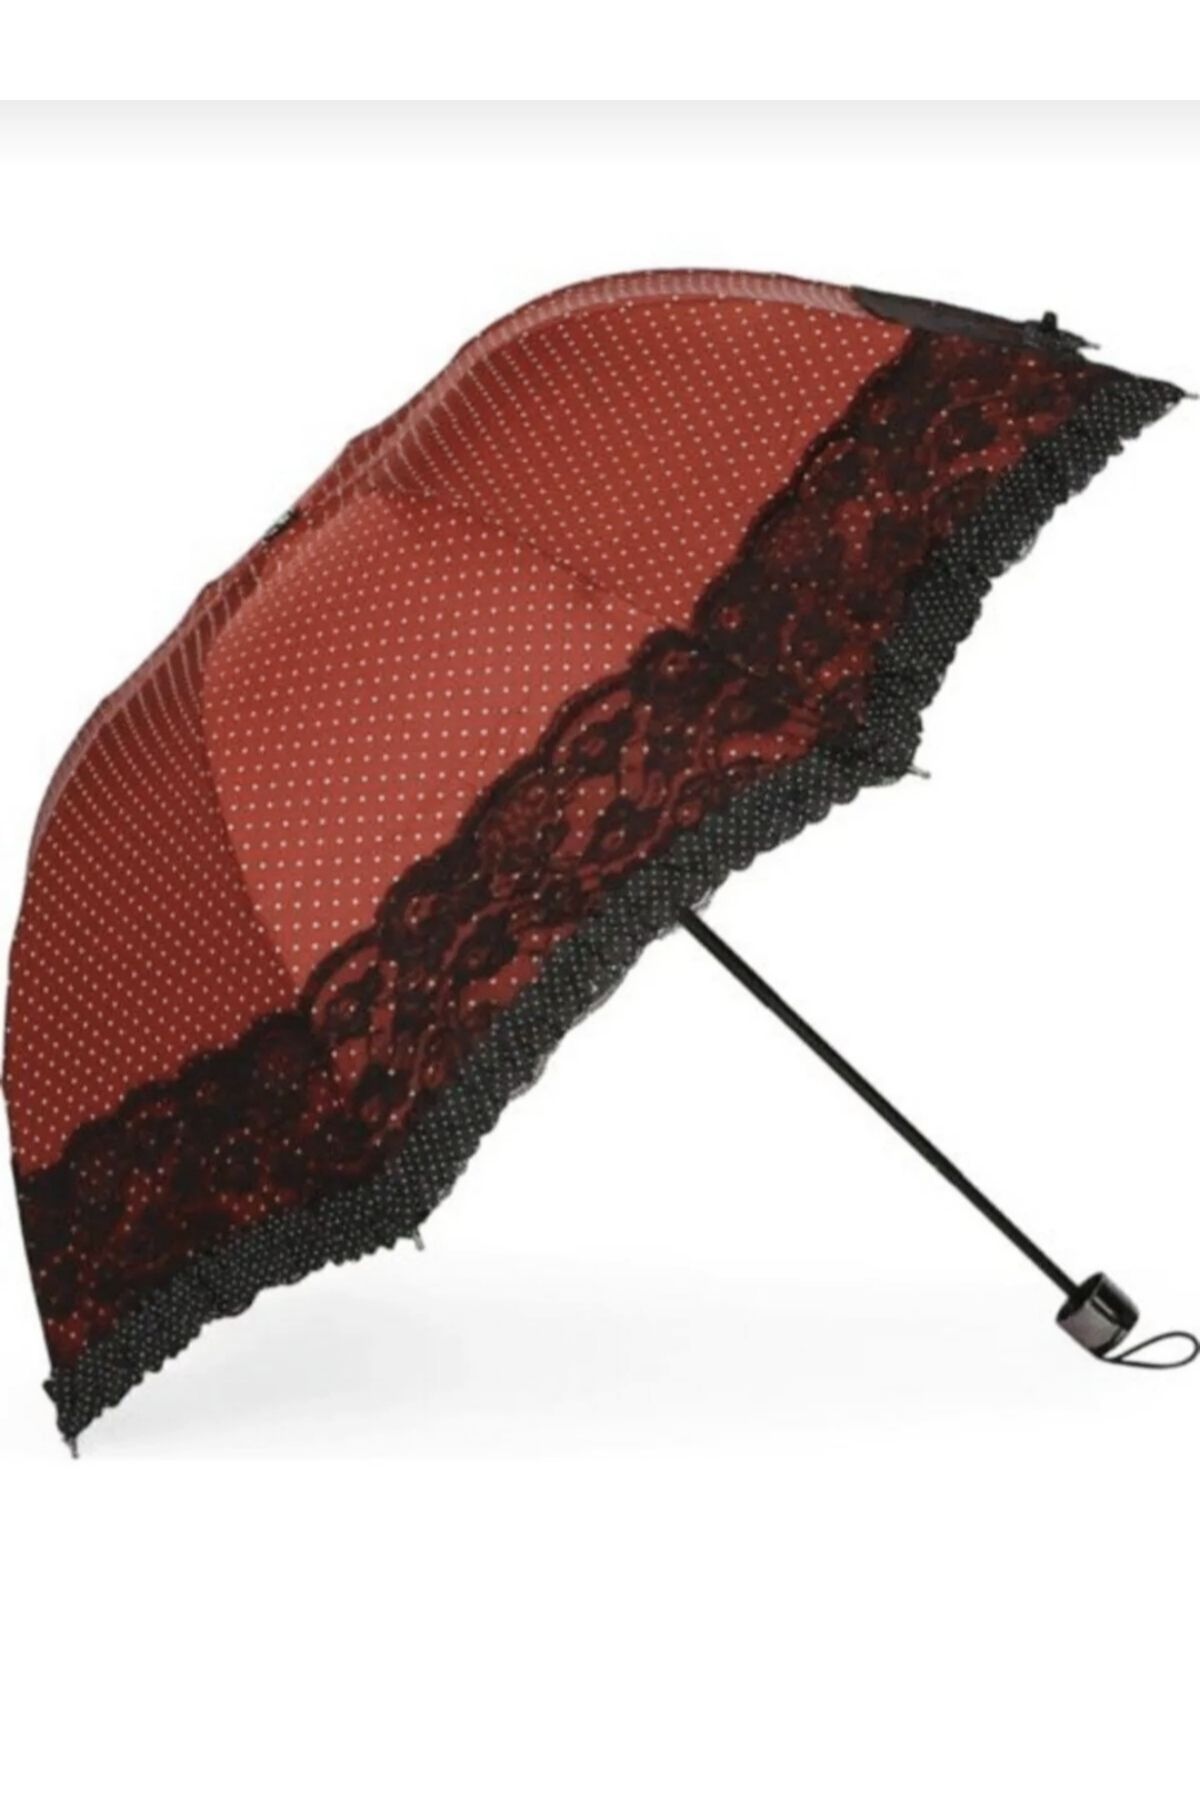 AVİPOLES Çantalı Dantelli şemsiye rüzgâra dayanaklı 8 tel manuel şemsiye